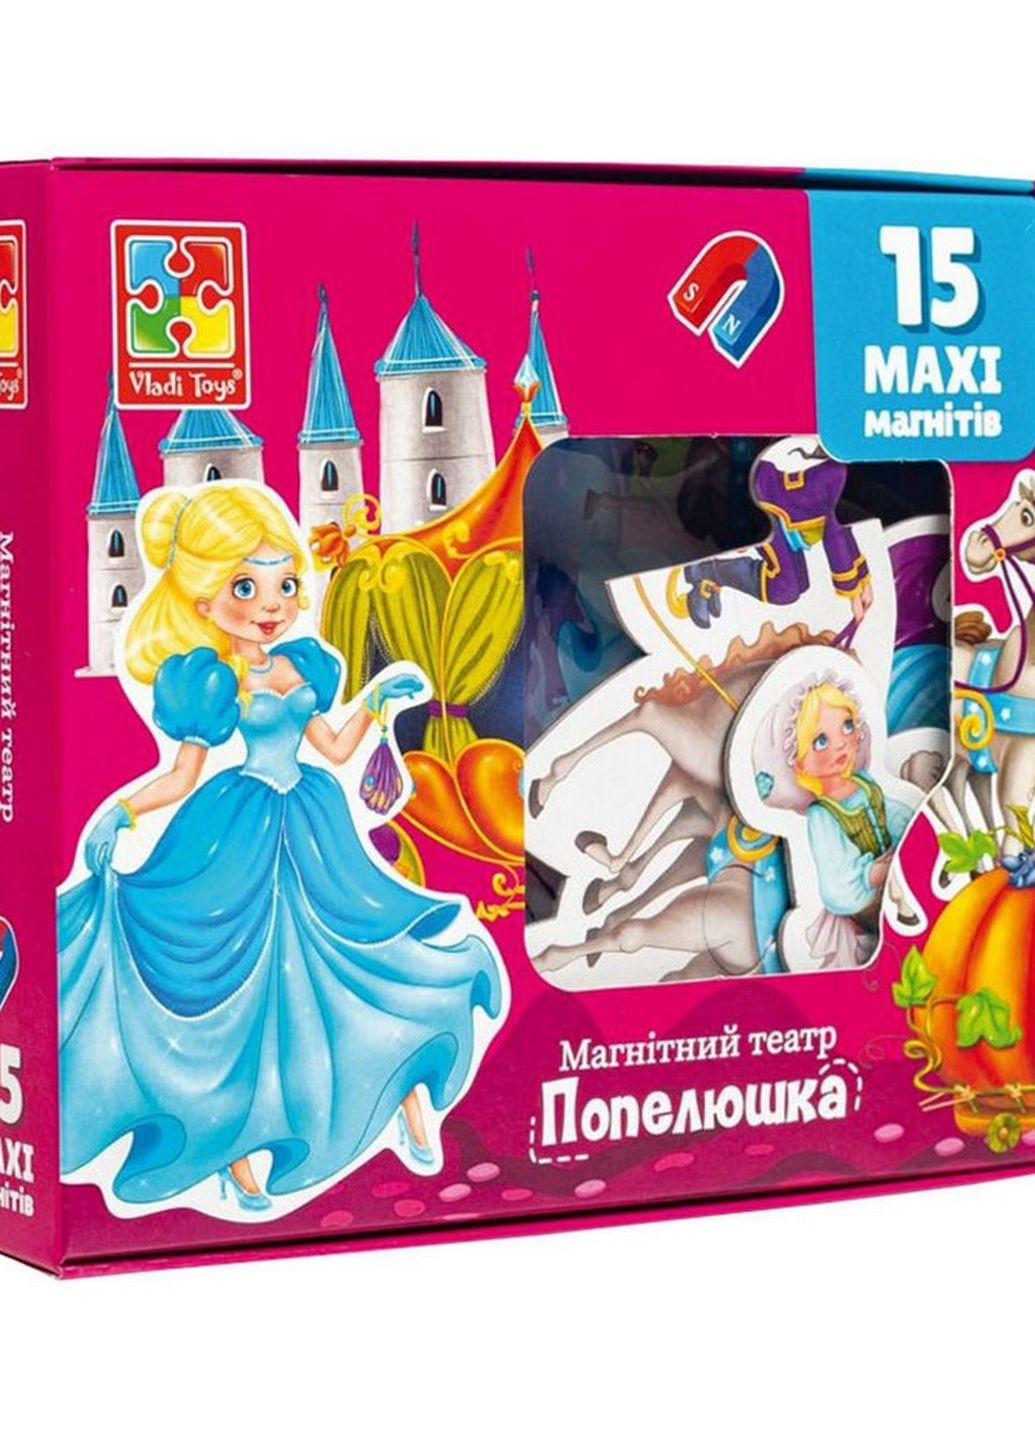 Настольная игра магнитный театр "Золушка" VT3206-53 Укр Vladi toys (262085222)